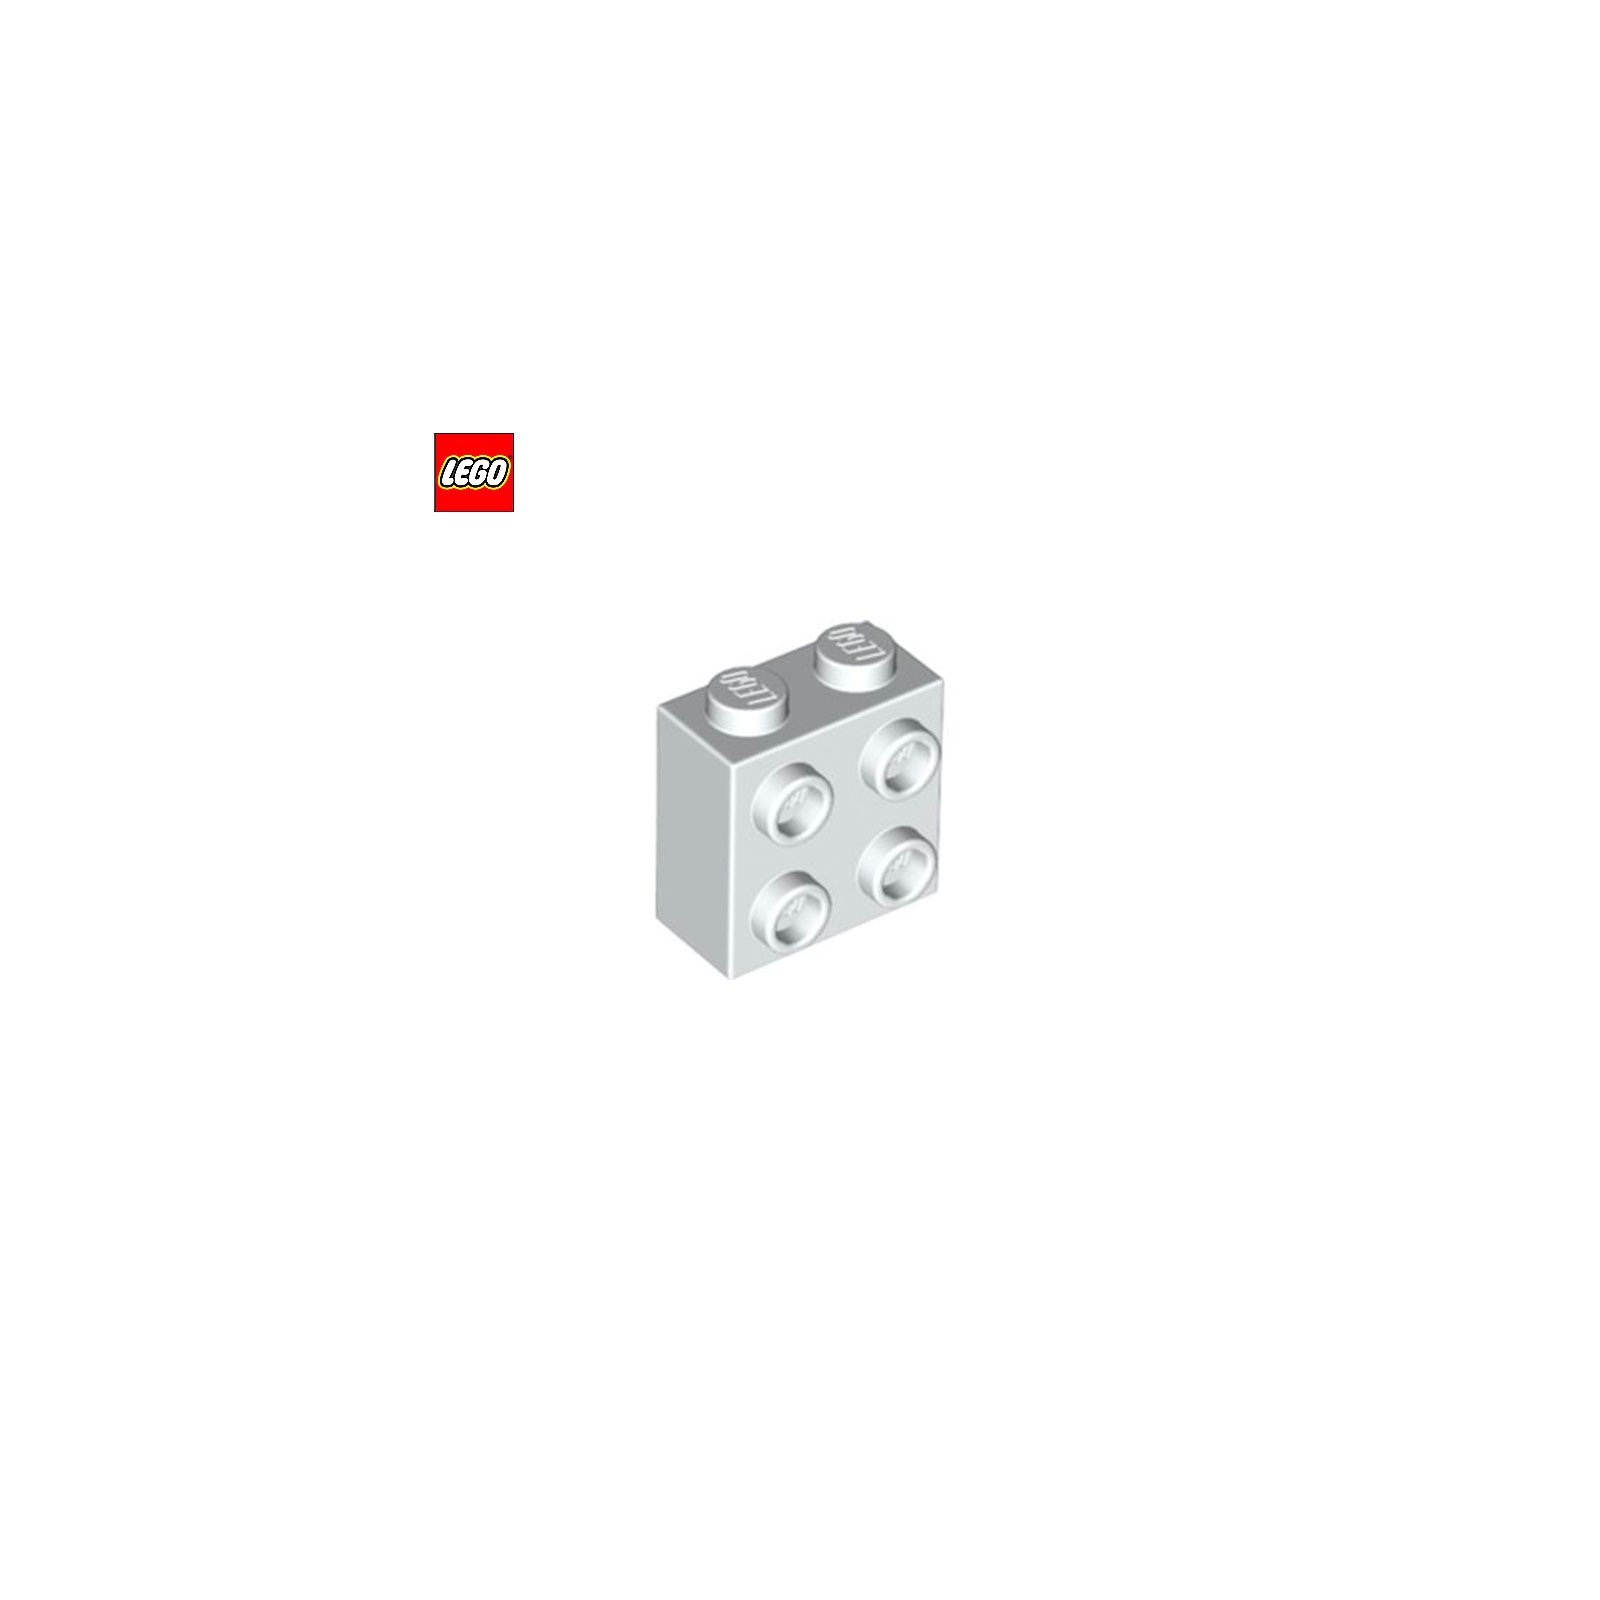 Brique 1x2x1 avec 4 tenons sur 1 face - Pièce LEGO® 22885